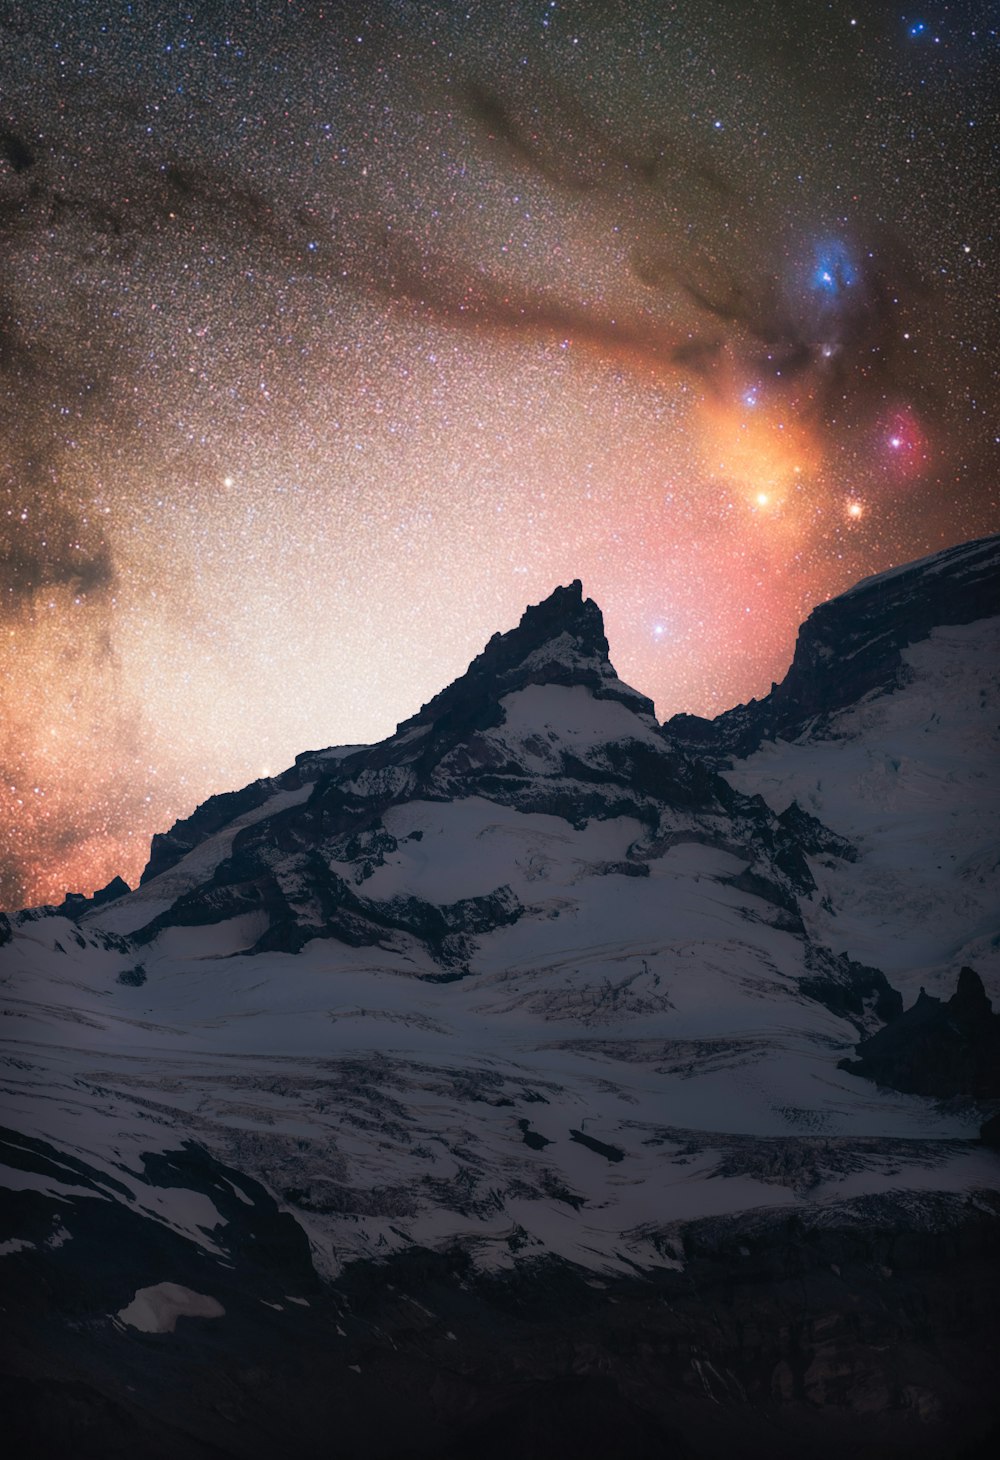 montanha coberta de neve sob noite estrelada